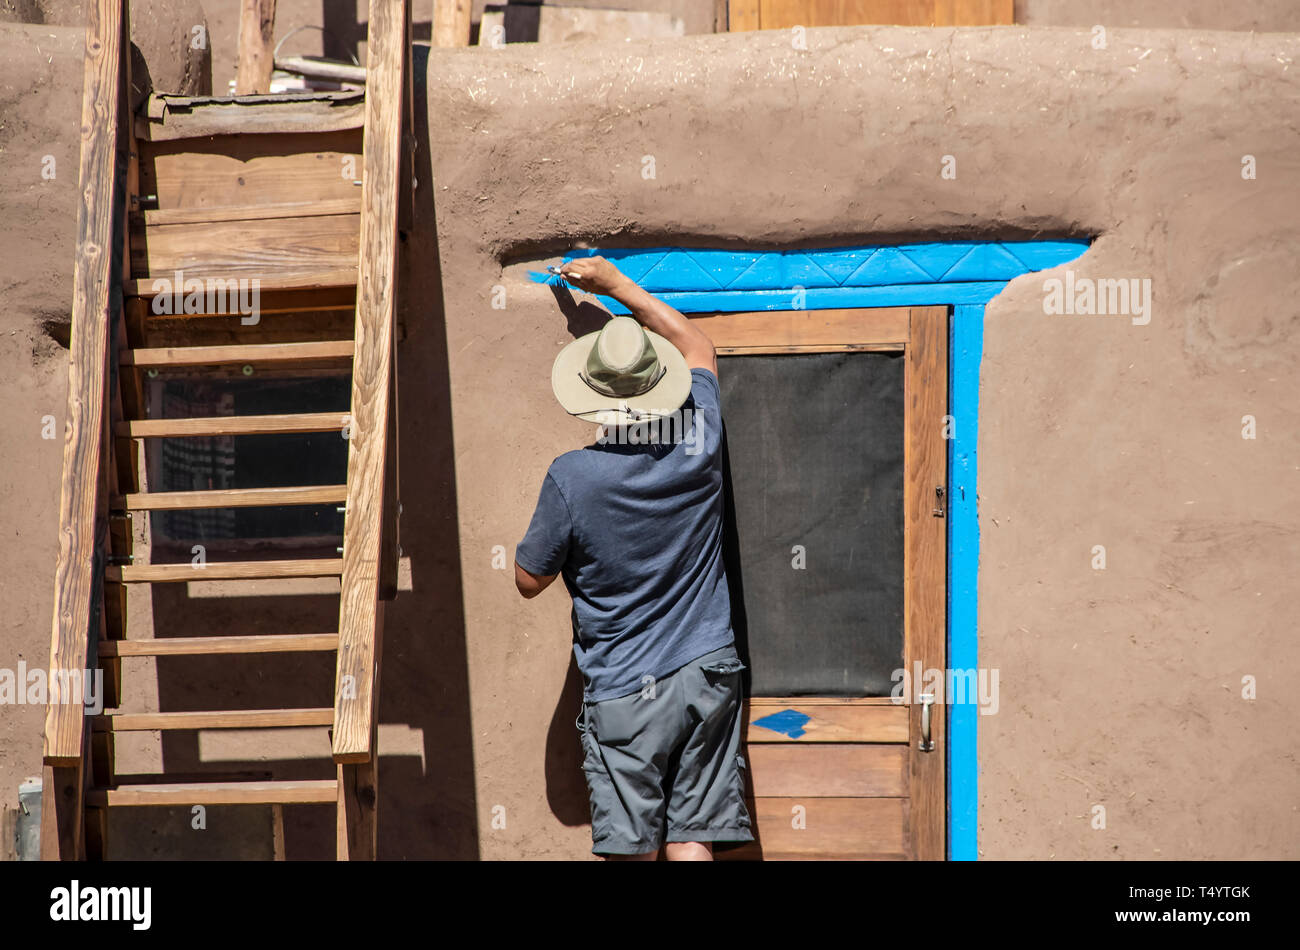 Zurück der gebürtigen amerikanischen Mann in Shorts und T-Shirt und Sonnenhut Malerei hellblau-türkis rund um die Tür eines Schlamm adobe Pueblo mit Holztreppe Stockfoto